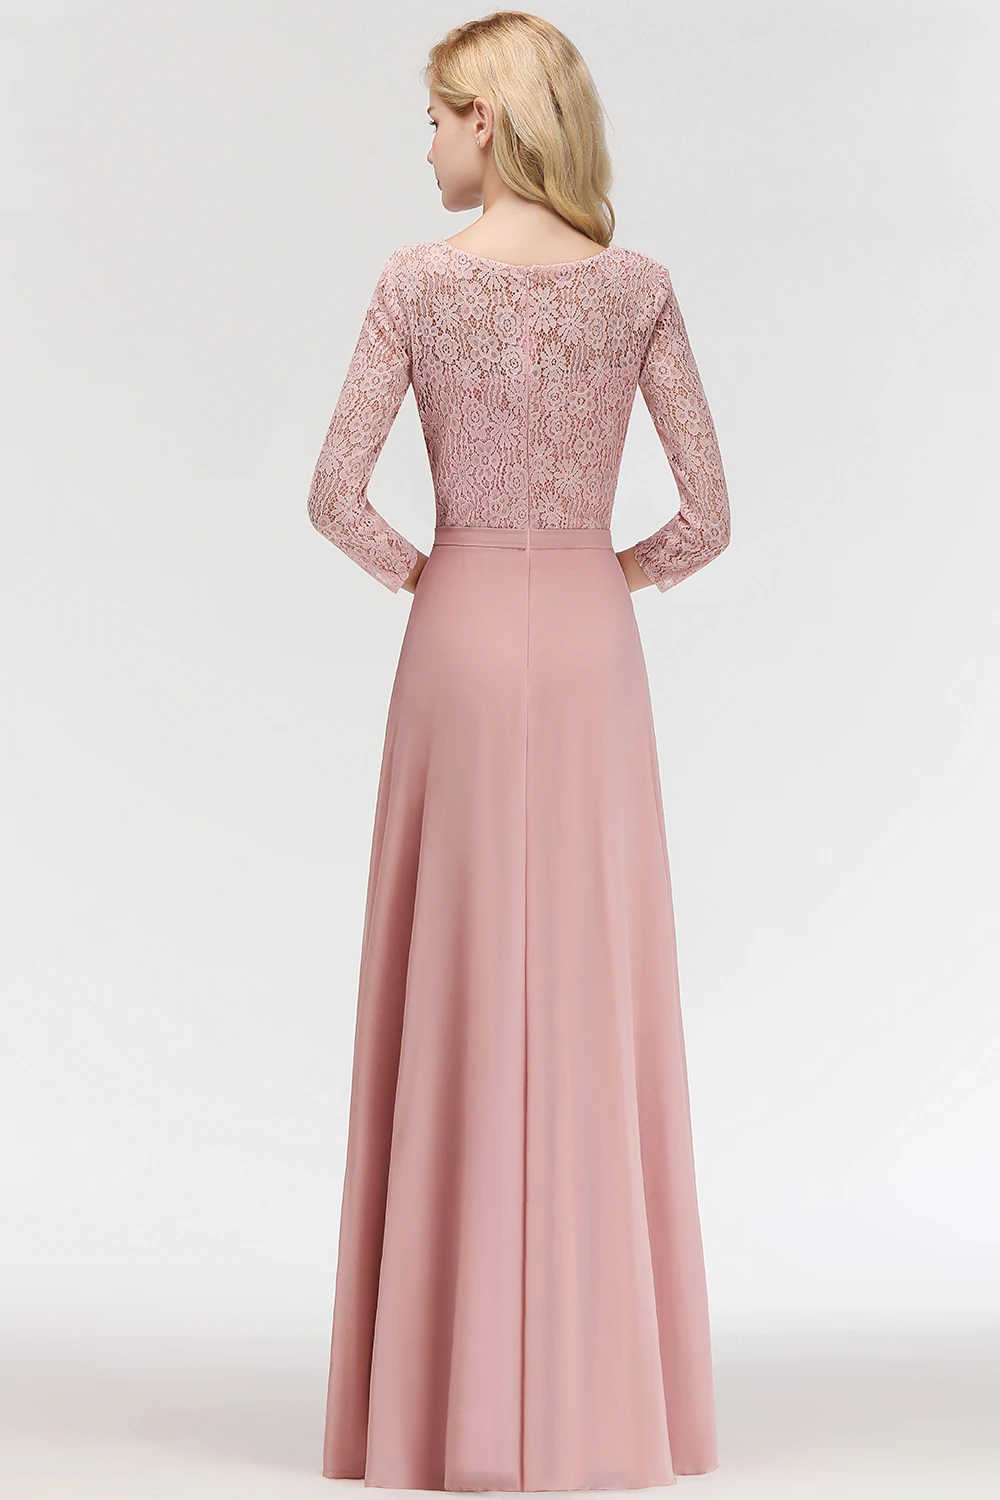 Женское платье без рукавов пыльно-розовый, длинный, шифоновый А-силуэт платье подружки невесты кружевное длинное праздничное свадебное официальное платье